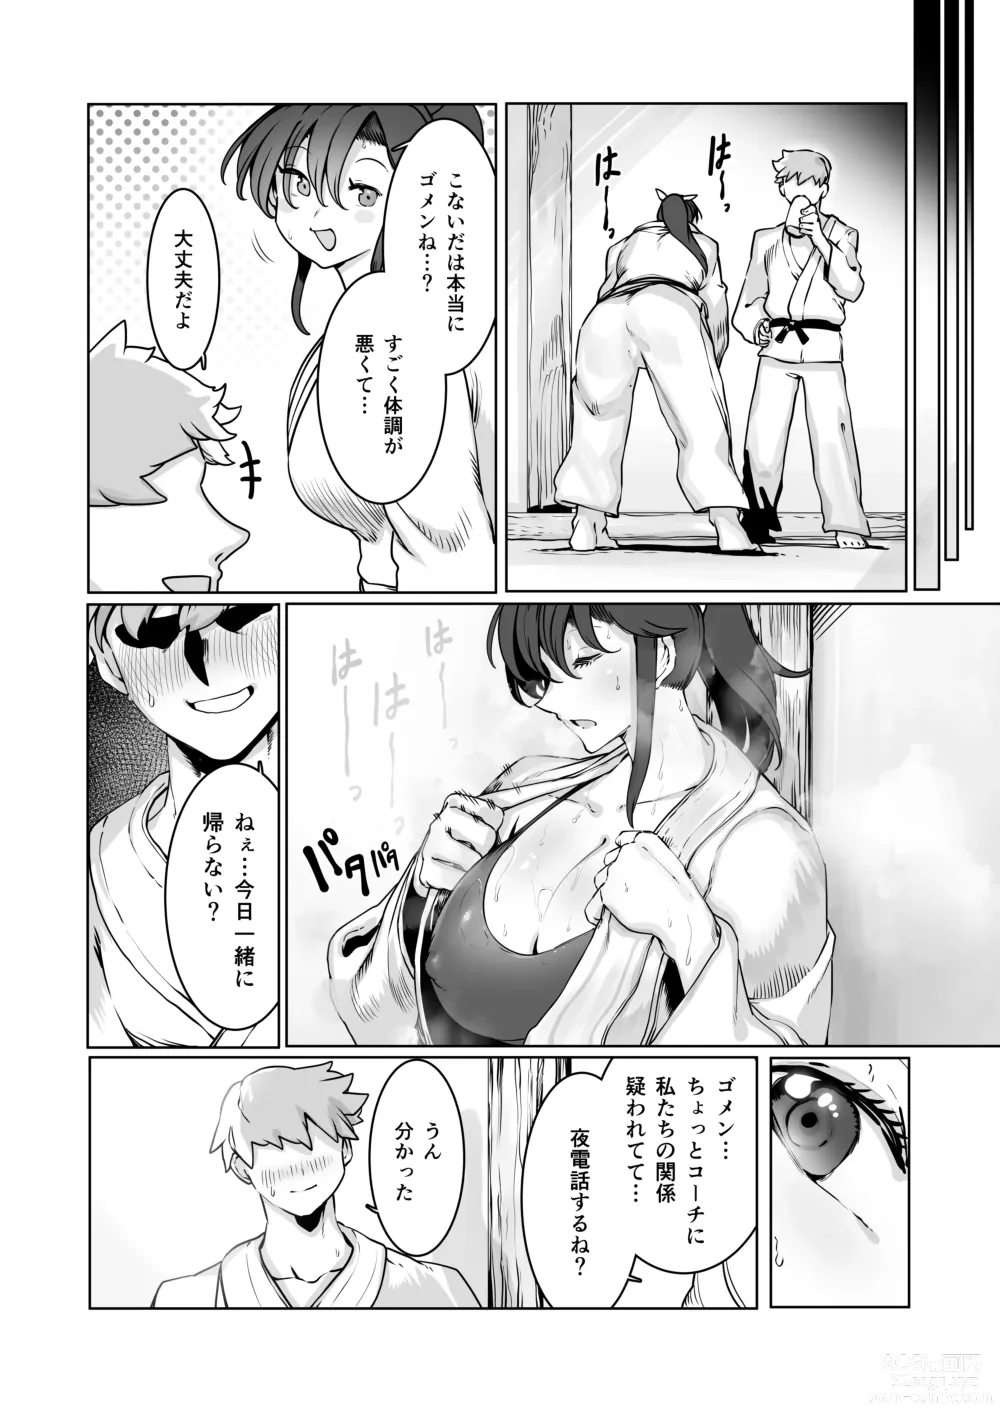 Page 43 of doujinshi Yozora no Tsuki ga Ochiru made